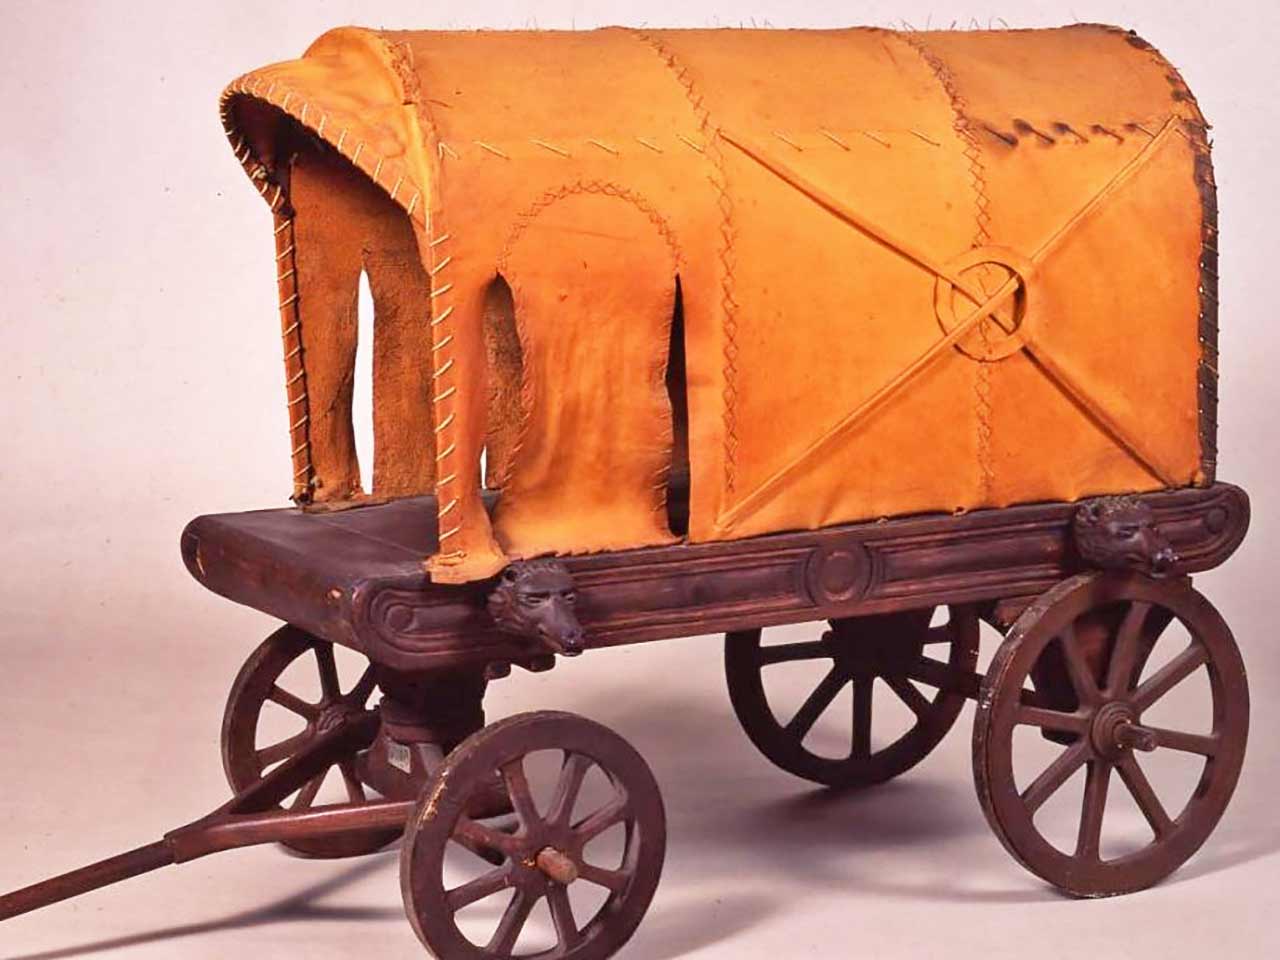 Ricostruzione della carruca dormitoria - Trainato da cavalli: il primo camper della storia